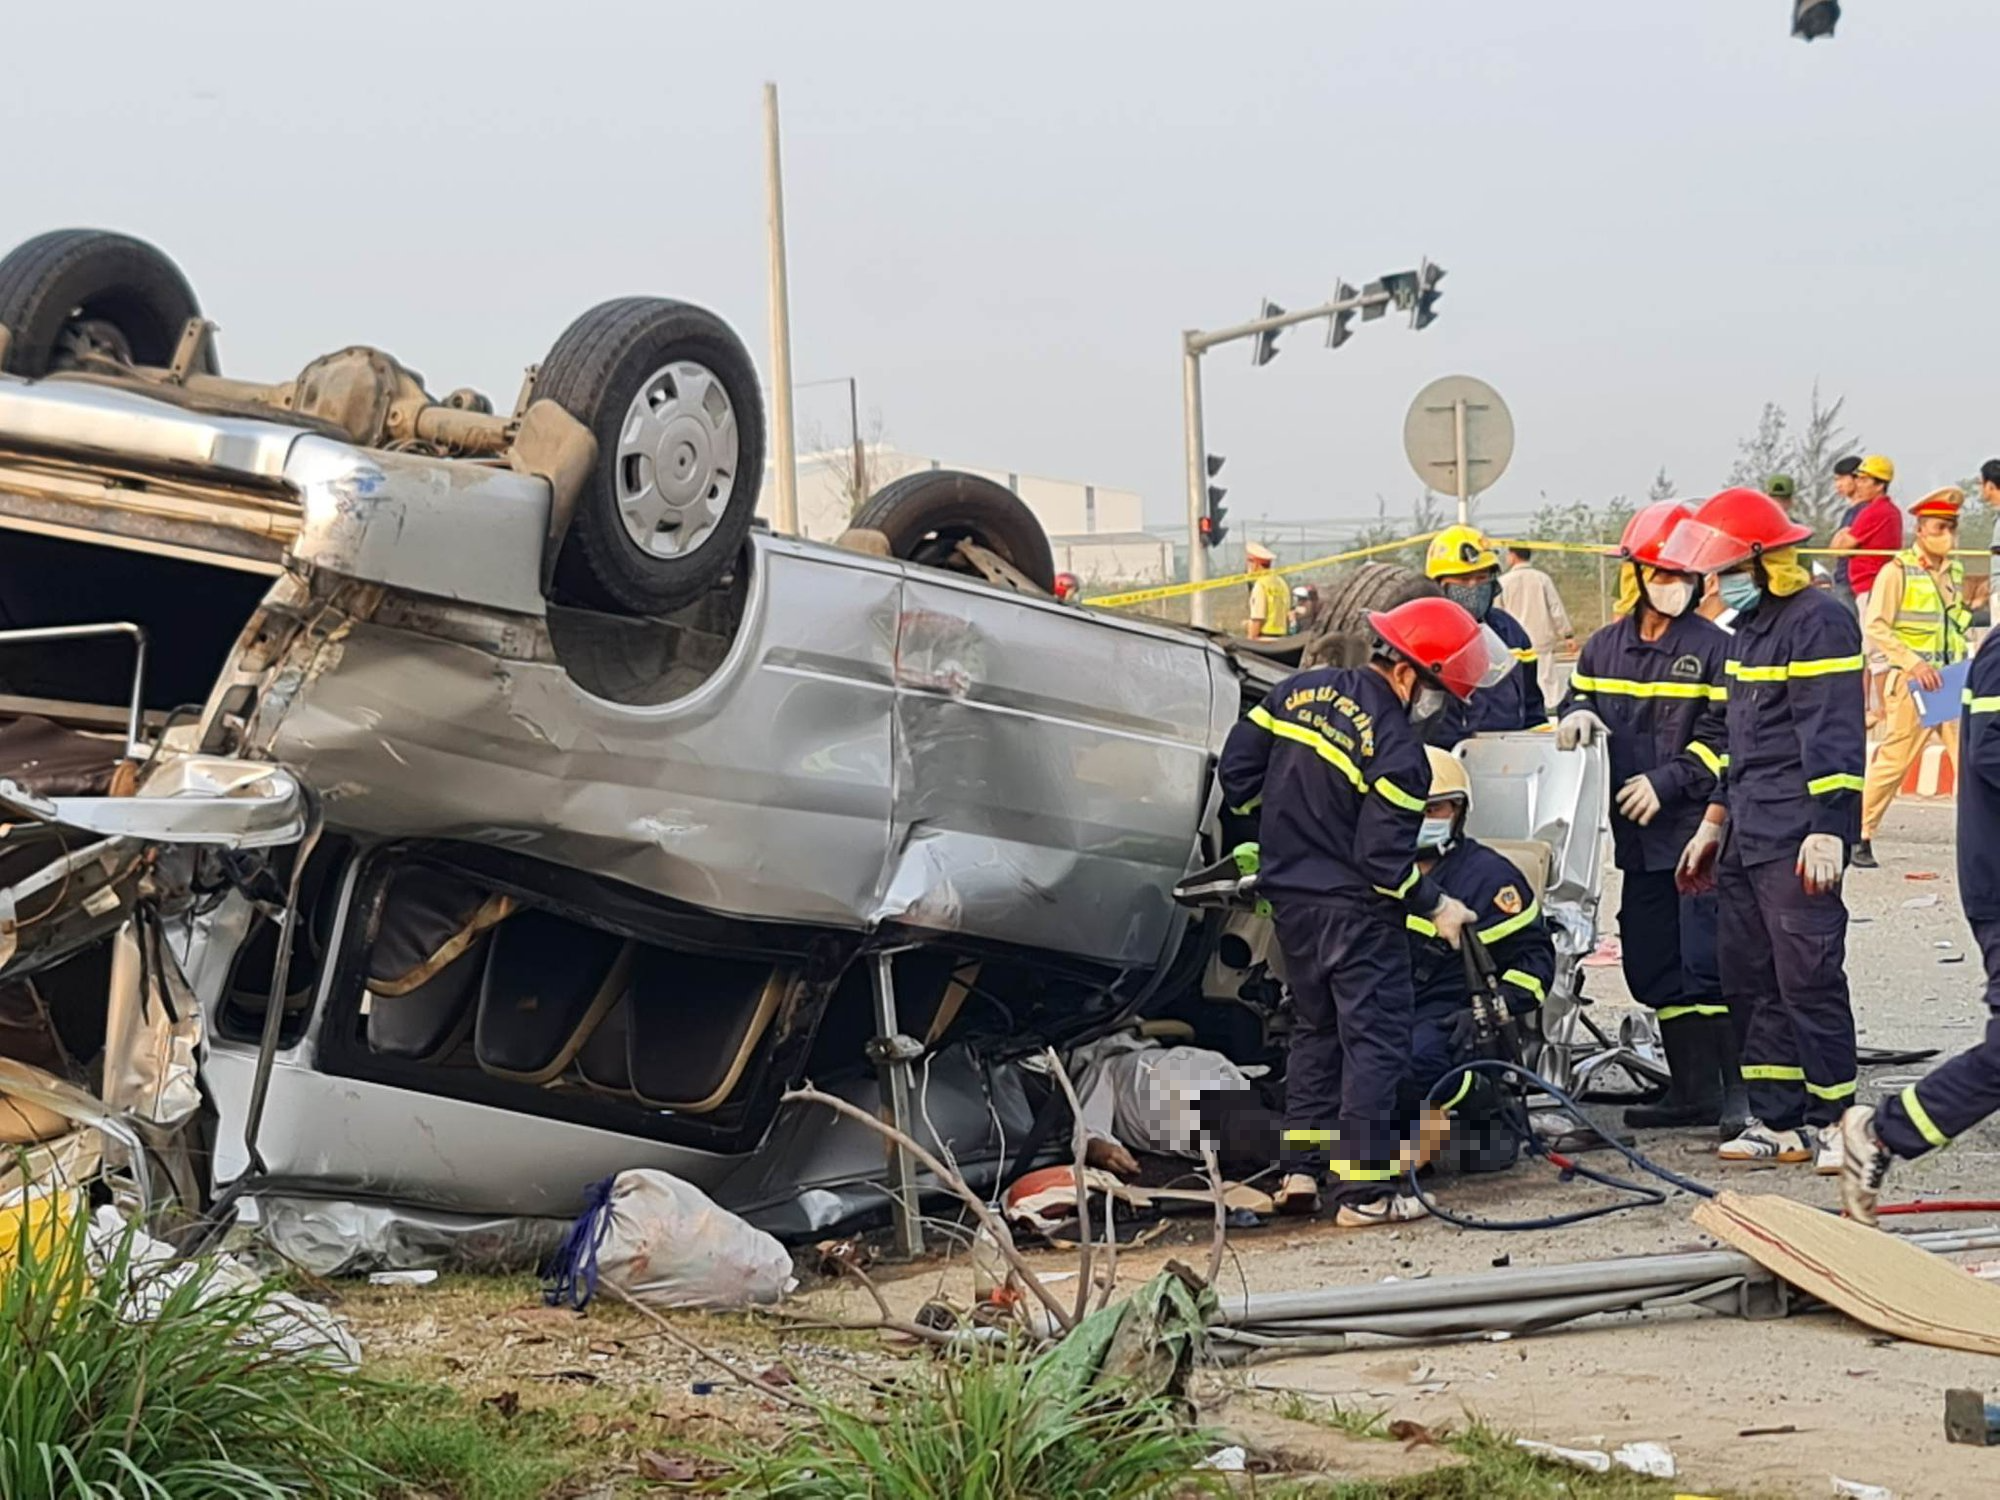 Nóng: Quảng Nam tai nạn giao thông 8 người tử vong  - Ảnh 2.